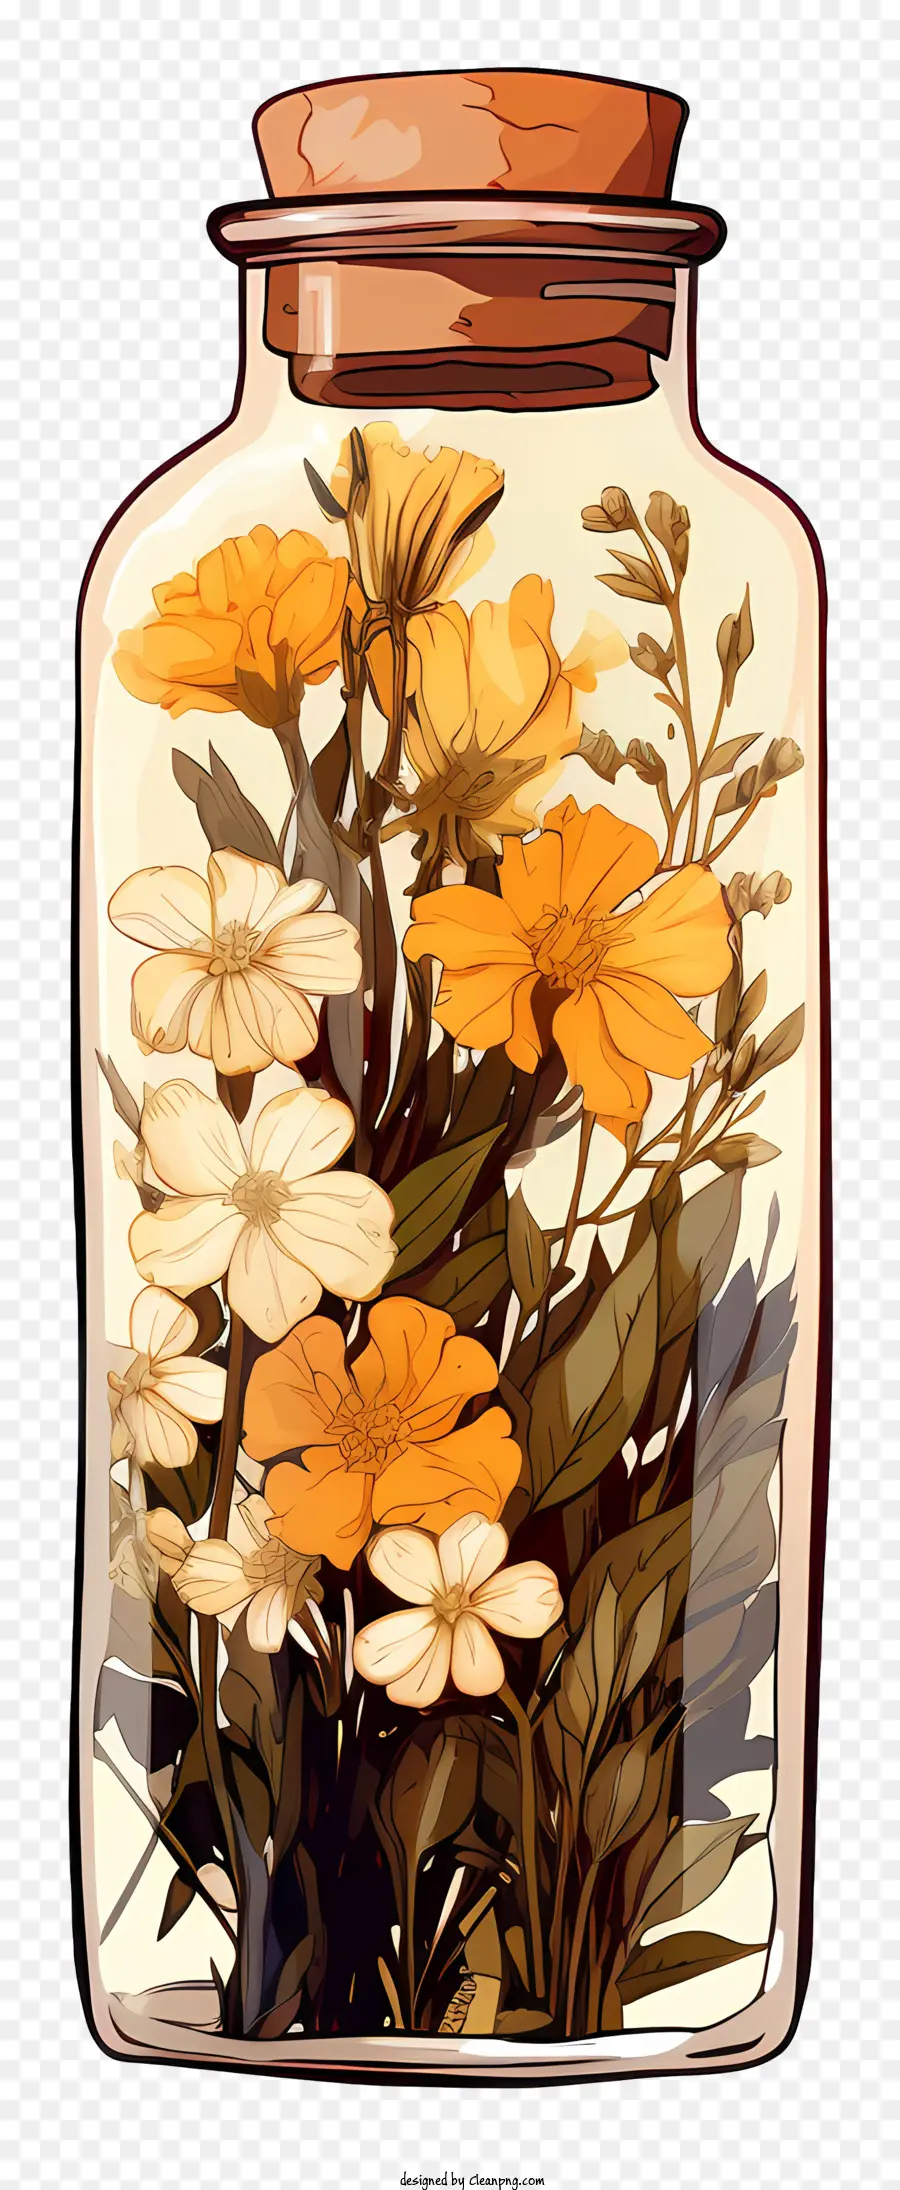 vetro fiore secco sì girasoli rose selvatiche - Sì, l'immagine raffigurava un barattolo di vetro pieno di fiori selvatici